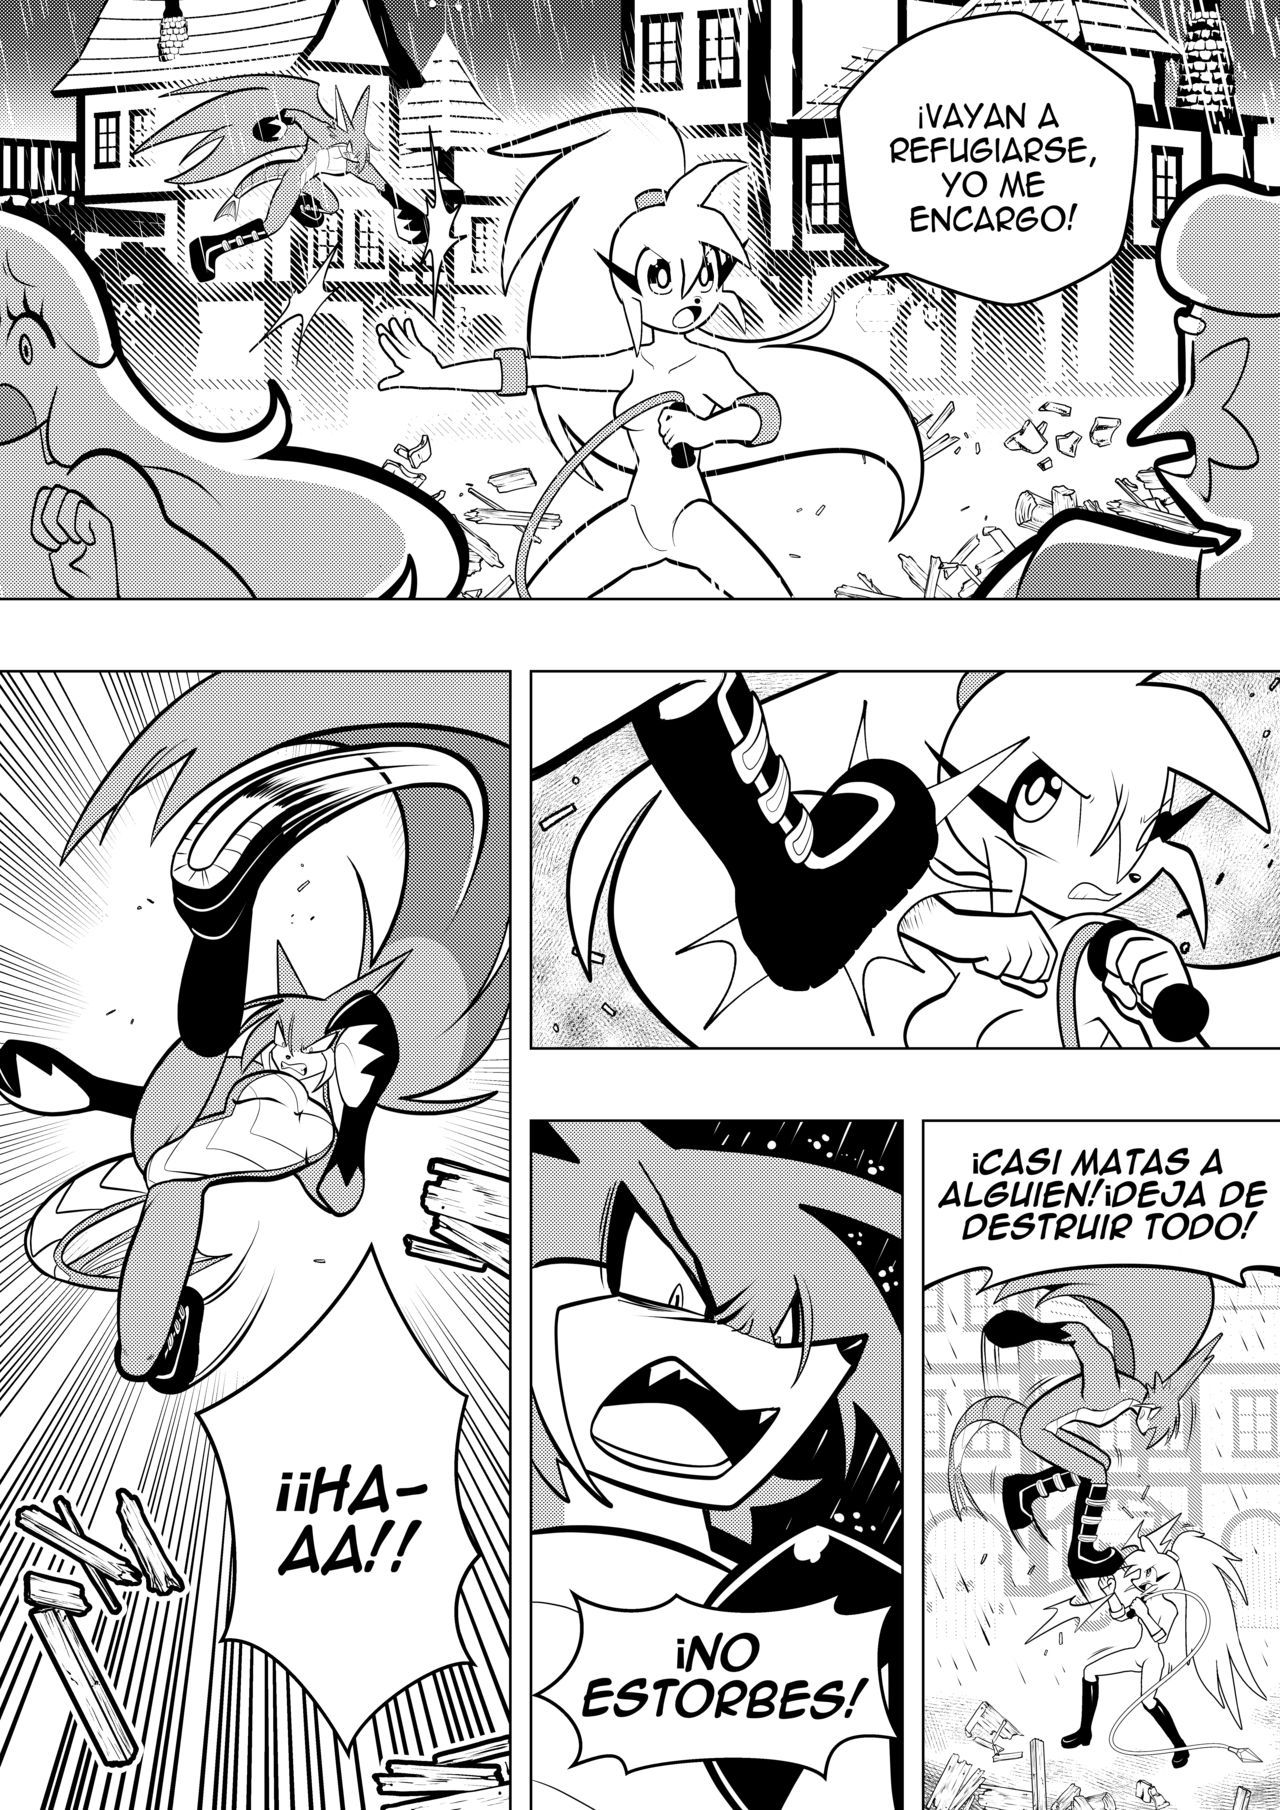 Spaicy comic (Spanish) 246